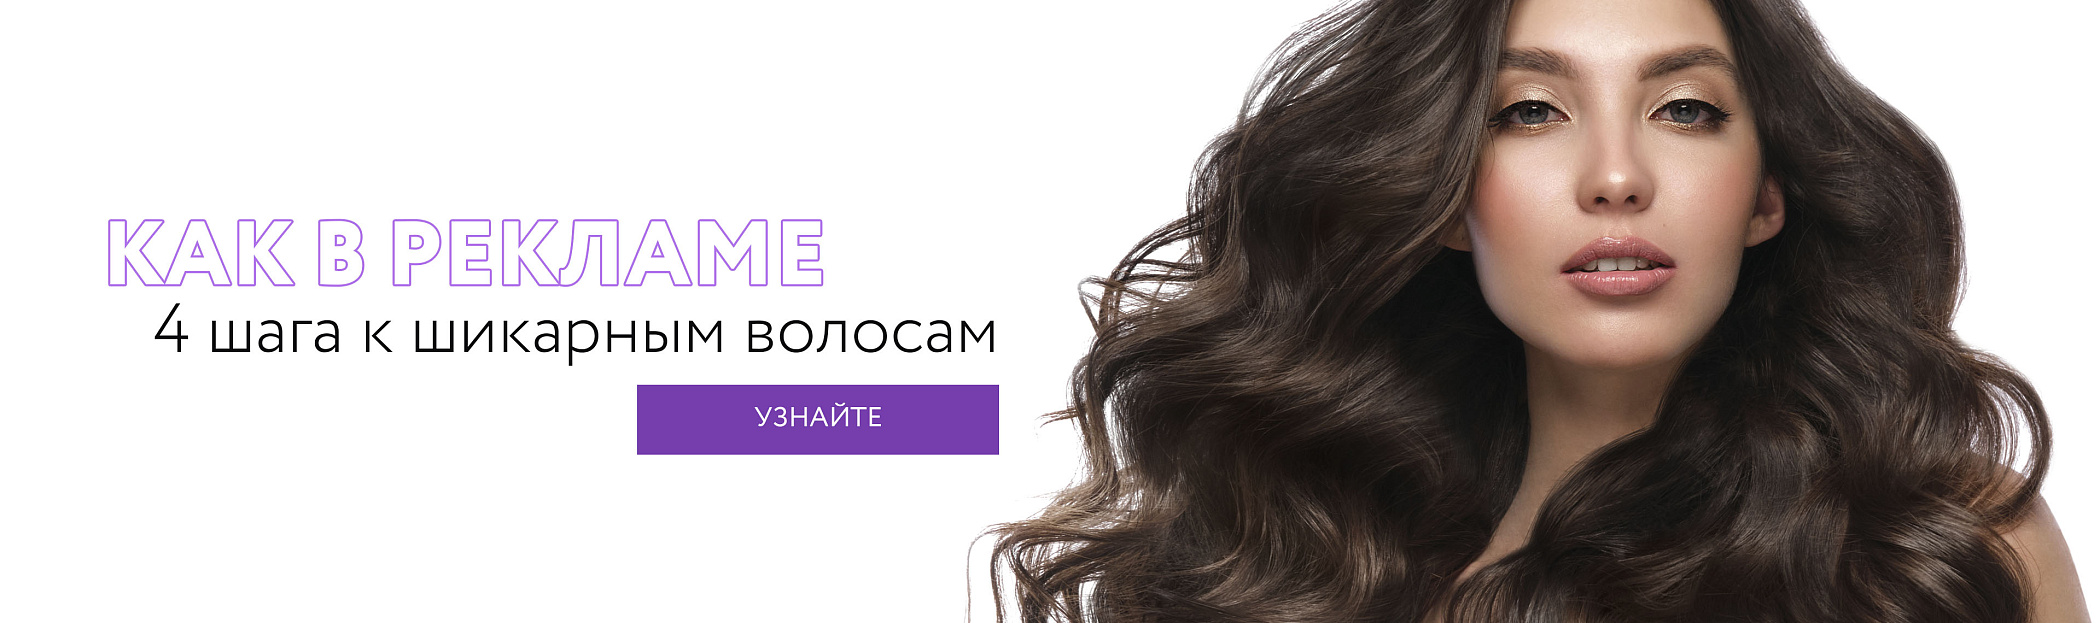 Как в рекламе: 4 шага к шикарным волосам (aravia.ru)